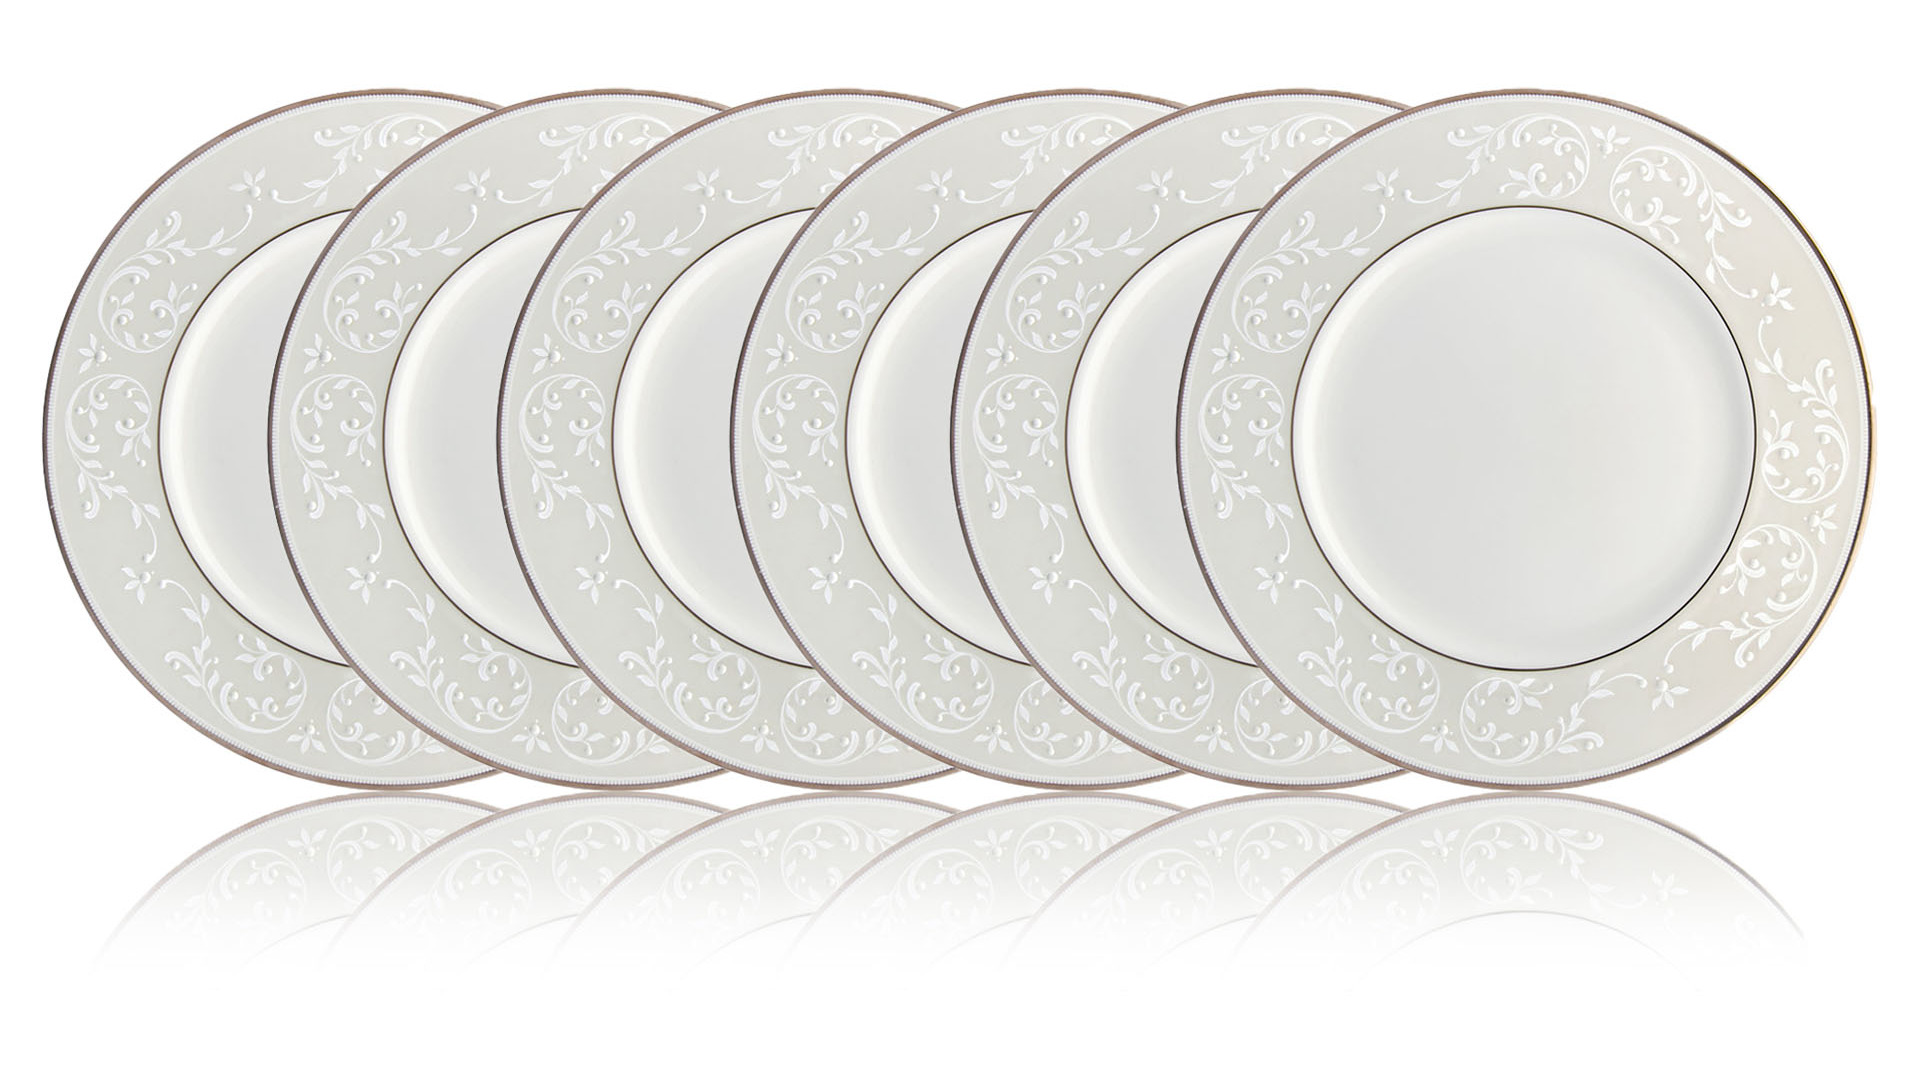 Набор тарелок акцентных Lenox Чистый опал 23 см, фарфор, 6 шт